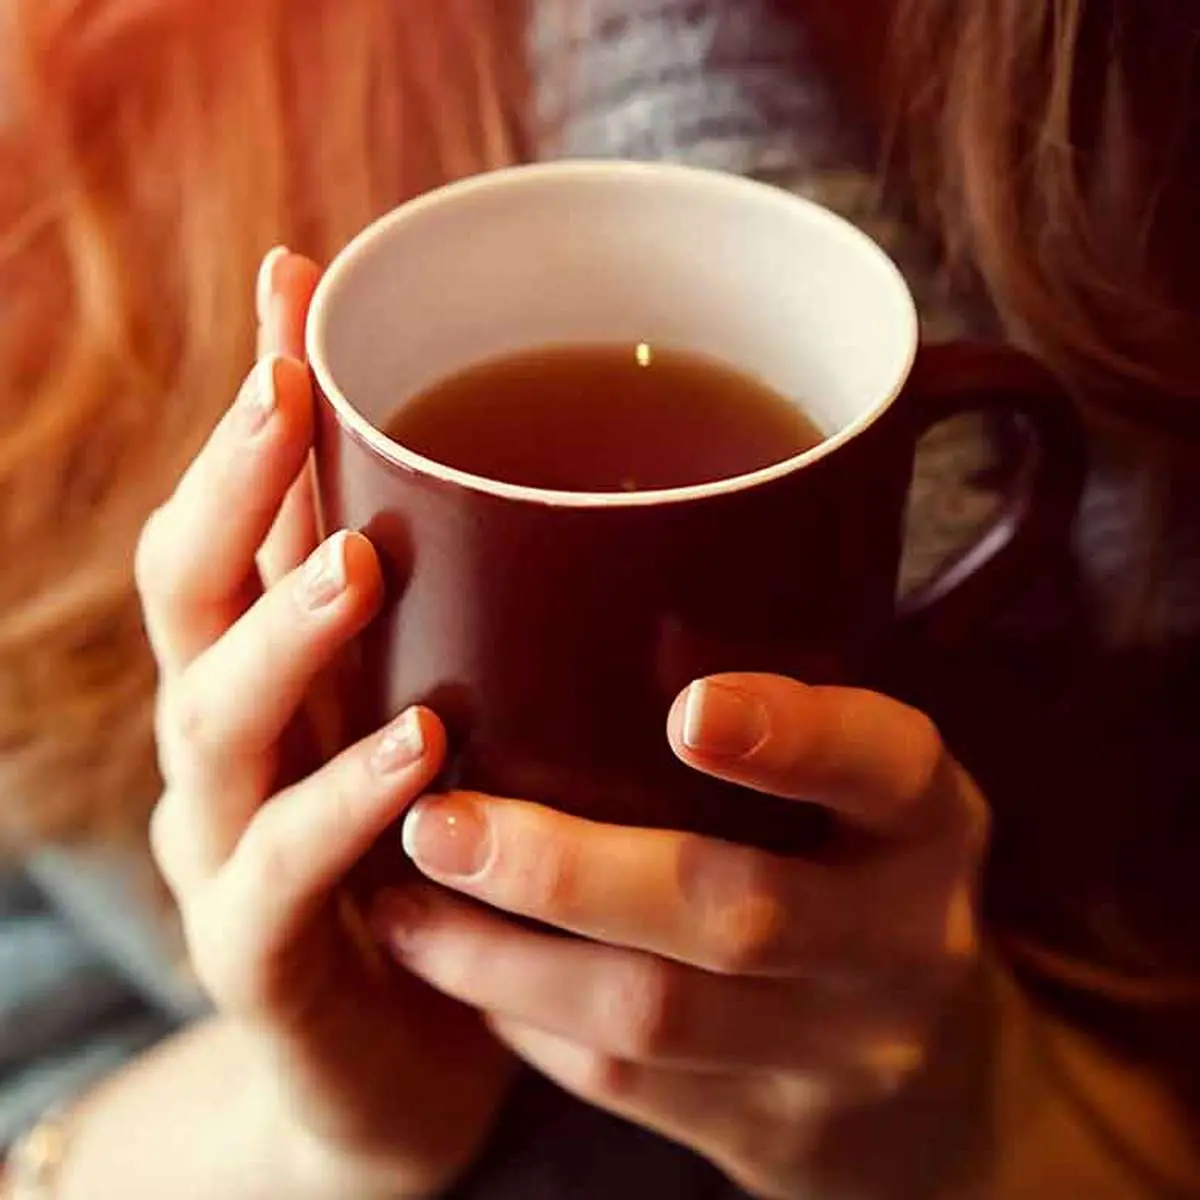 نوشیدن چقدر چای برای بدن مفید است؟